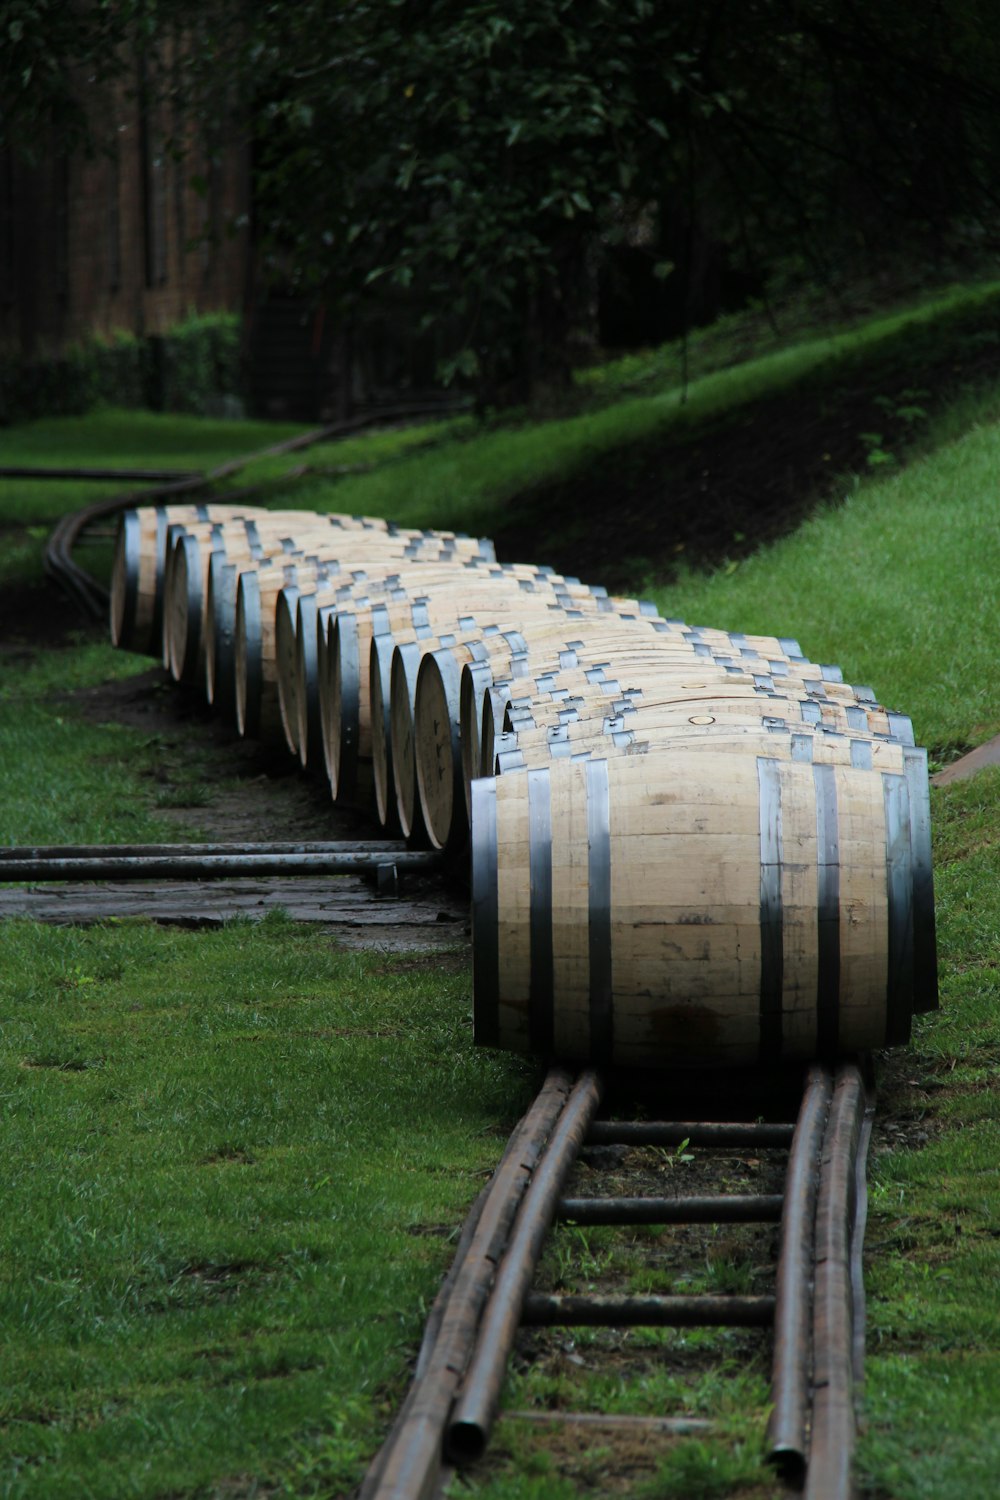 train of barrels